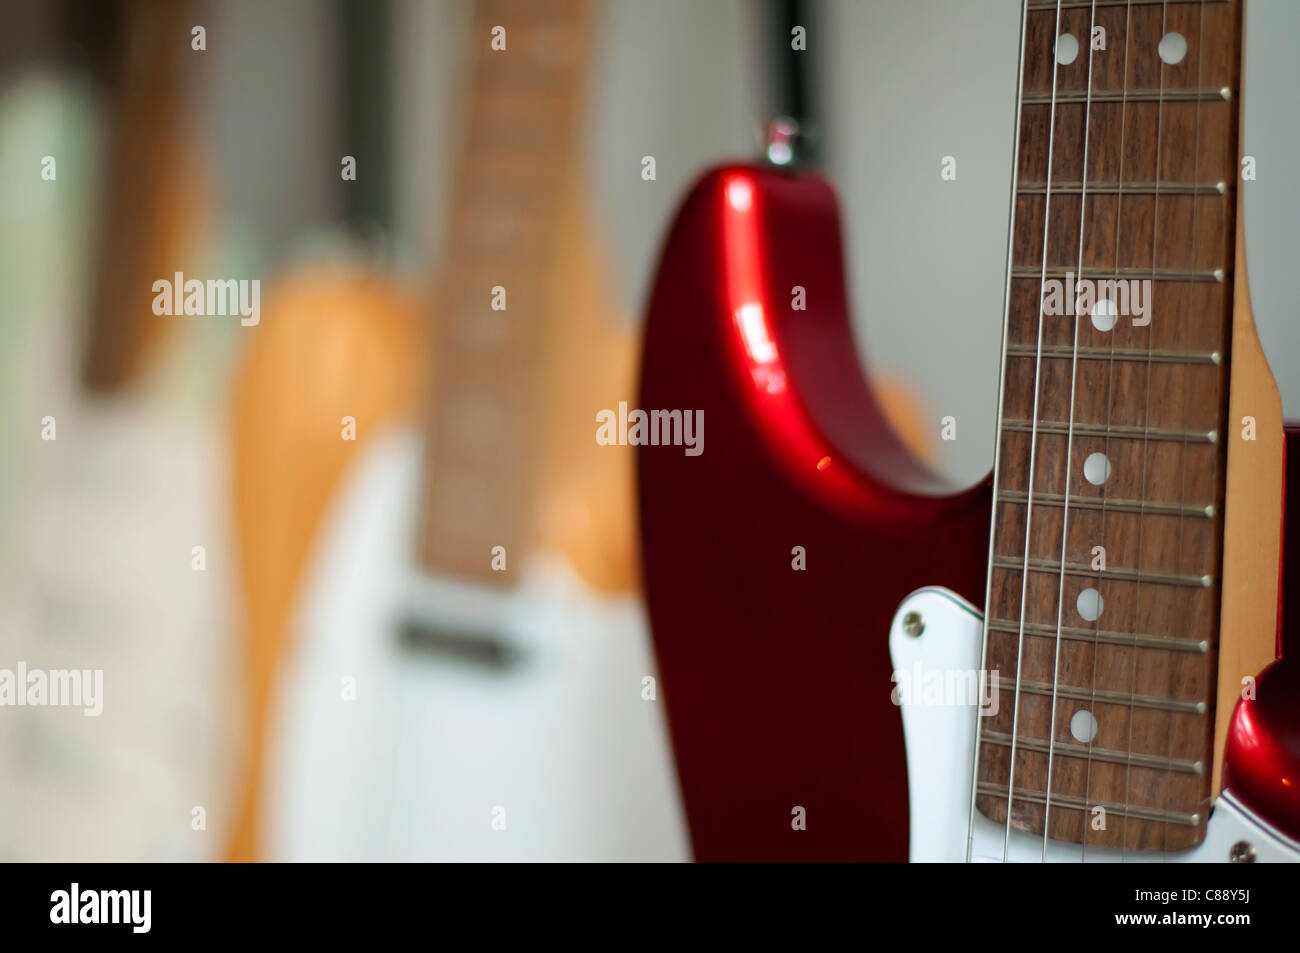 Ordinato chitarre acustiche in negozio. Close up Foto Stock